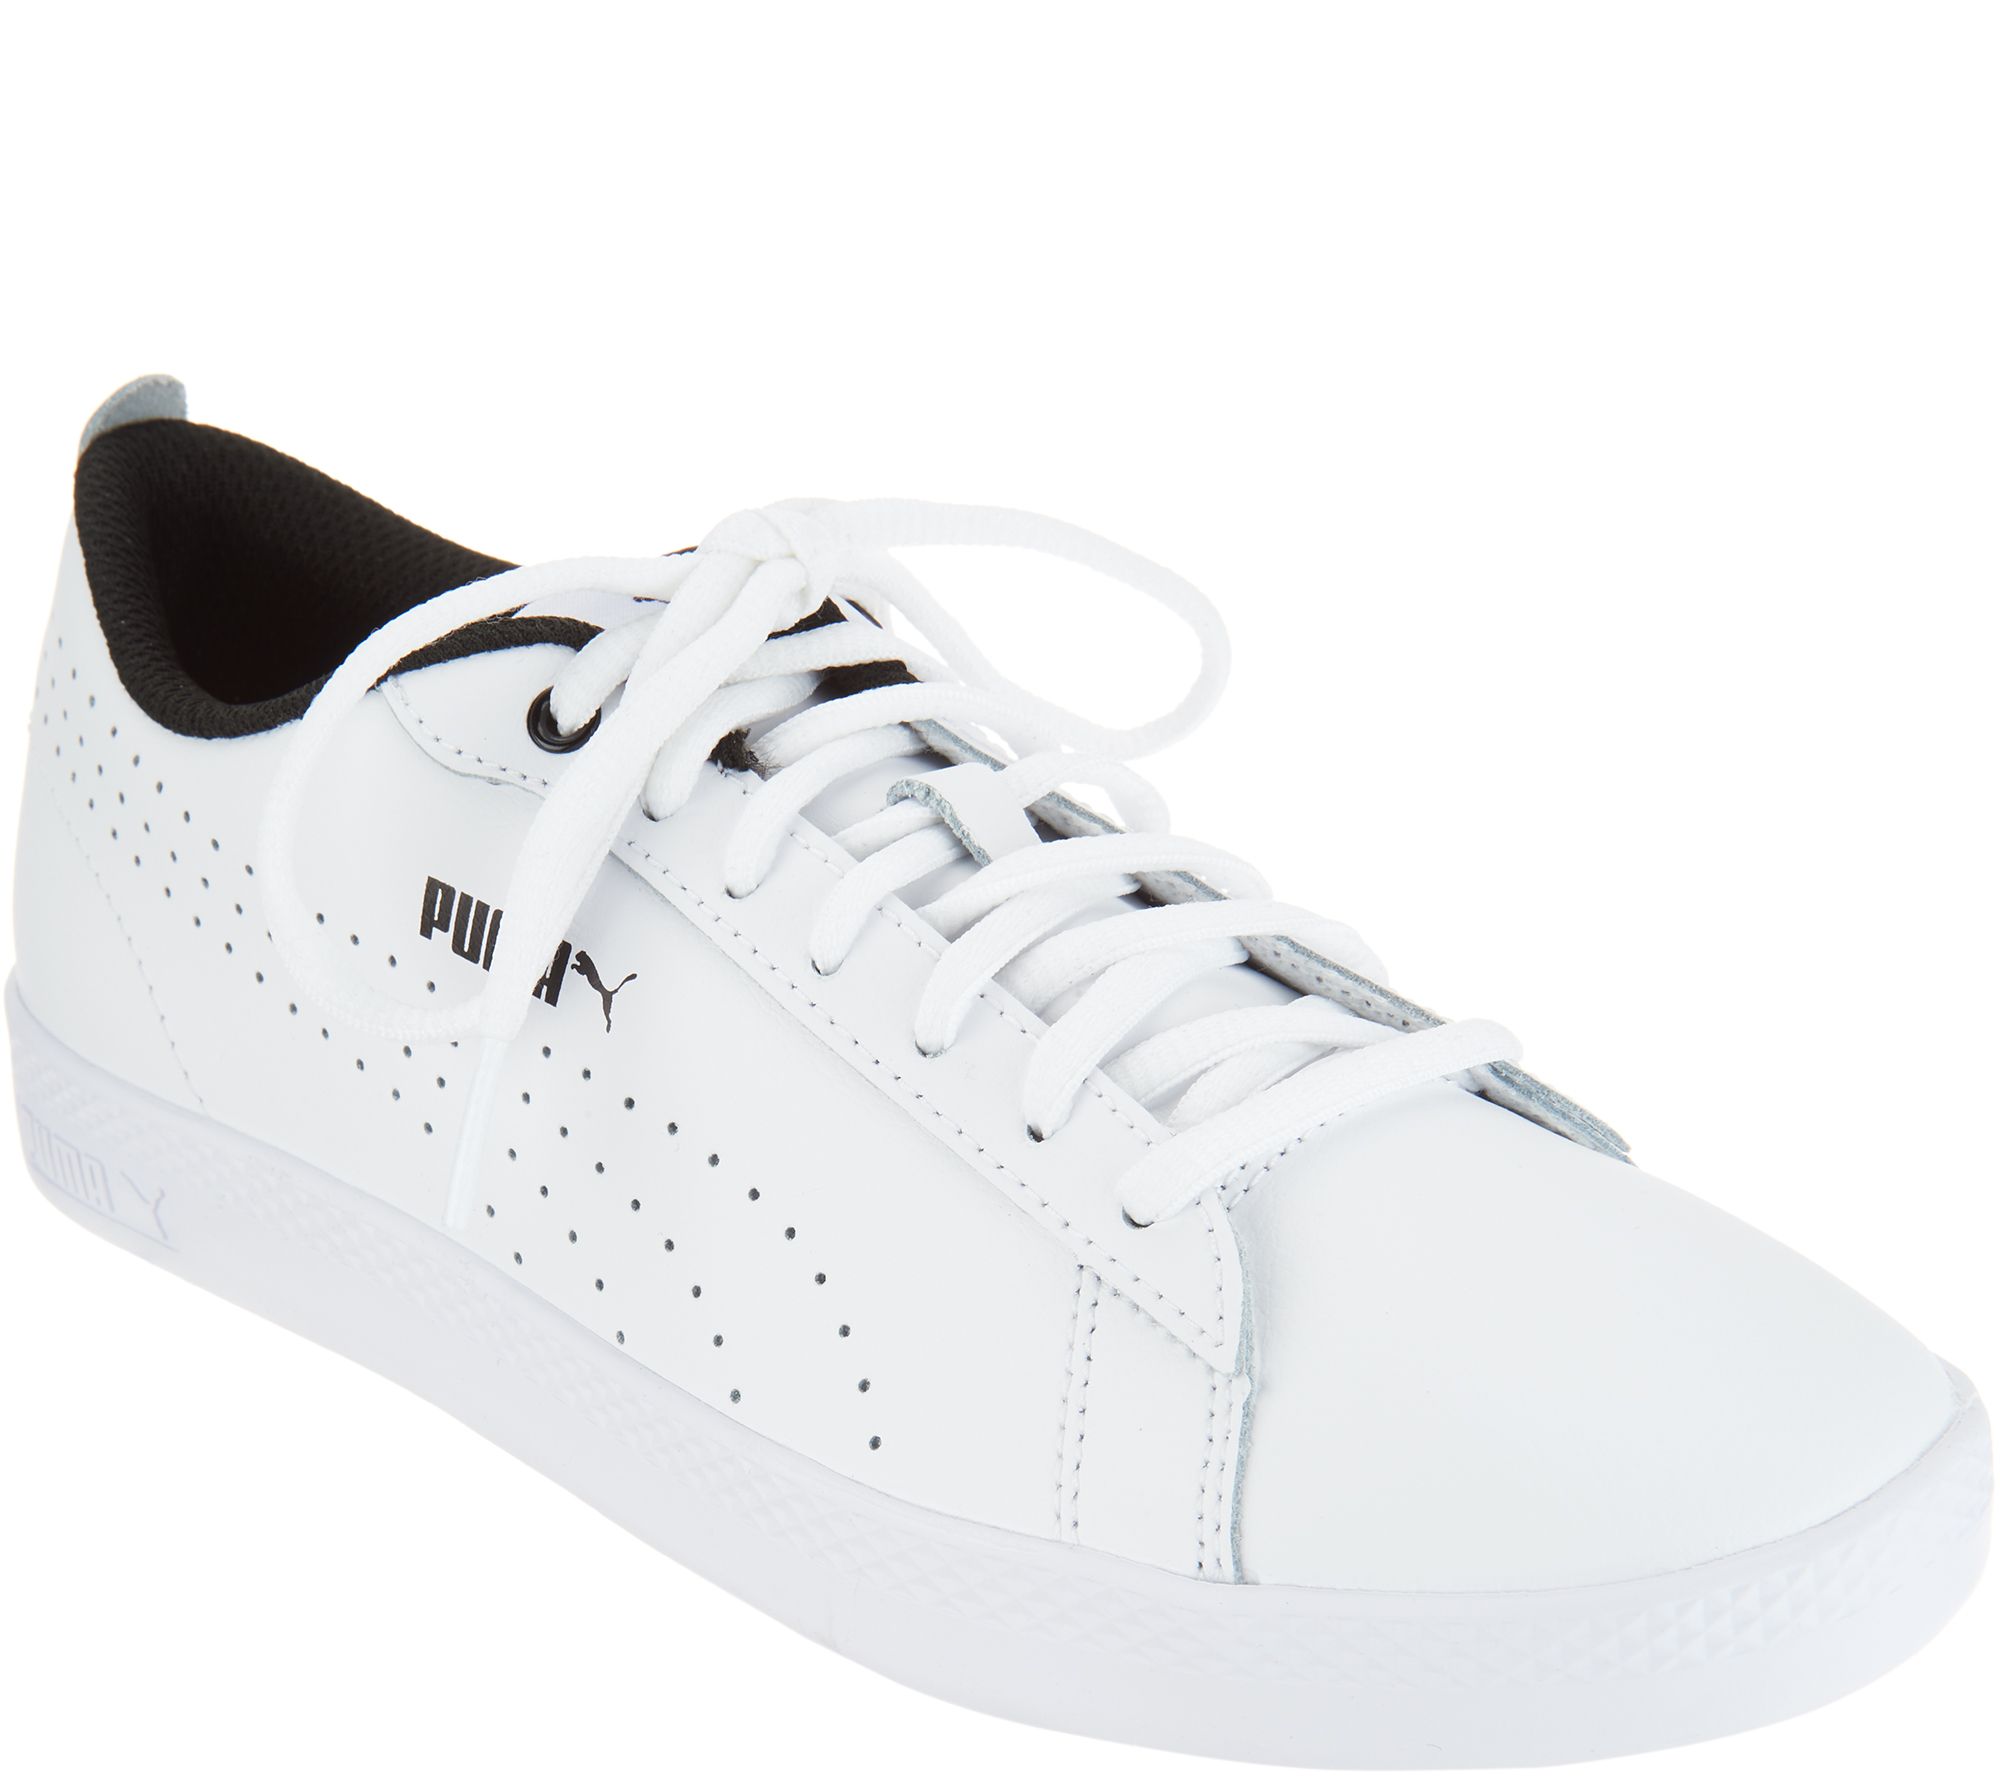 qvc white sneakers